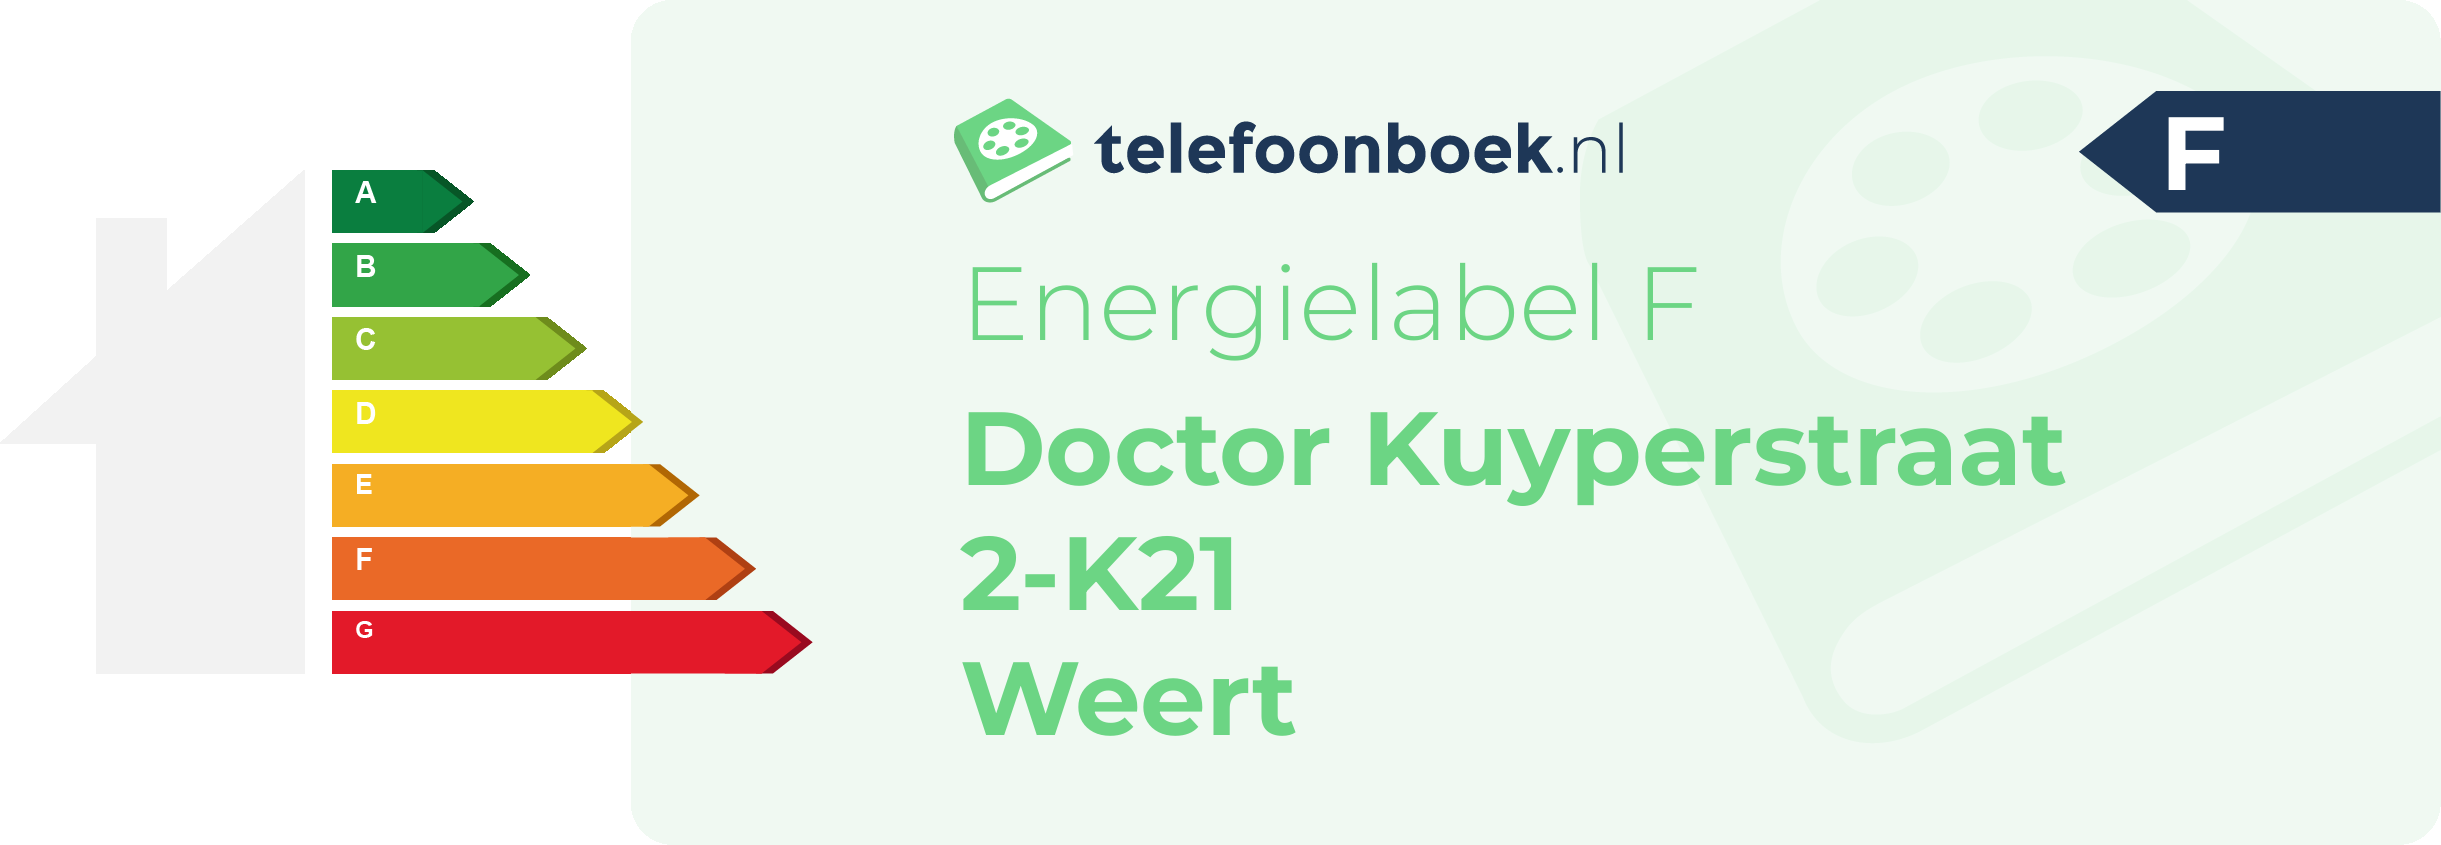 Energielabel Doctor Kuyperstraat 2-K21 Weert